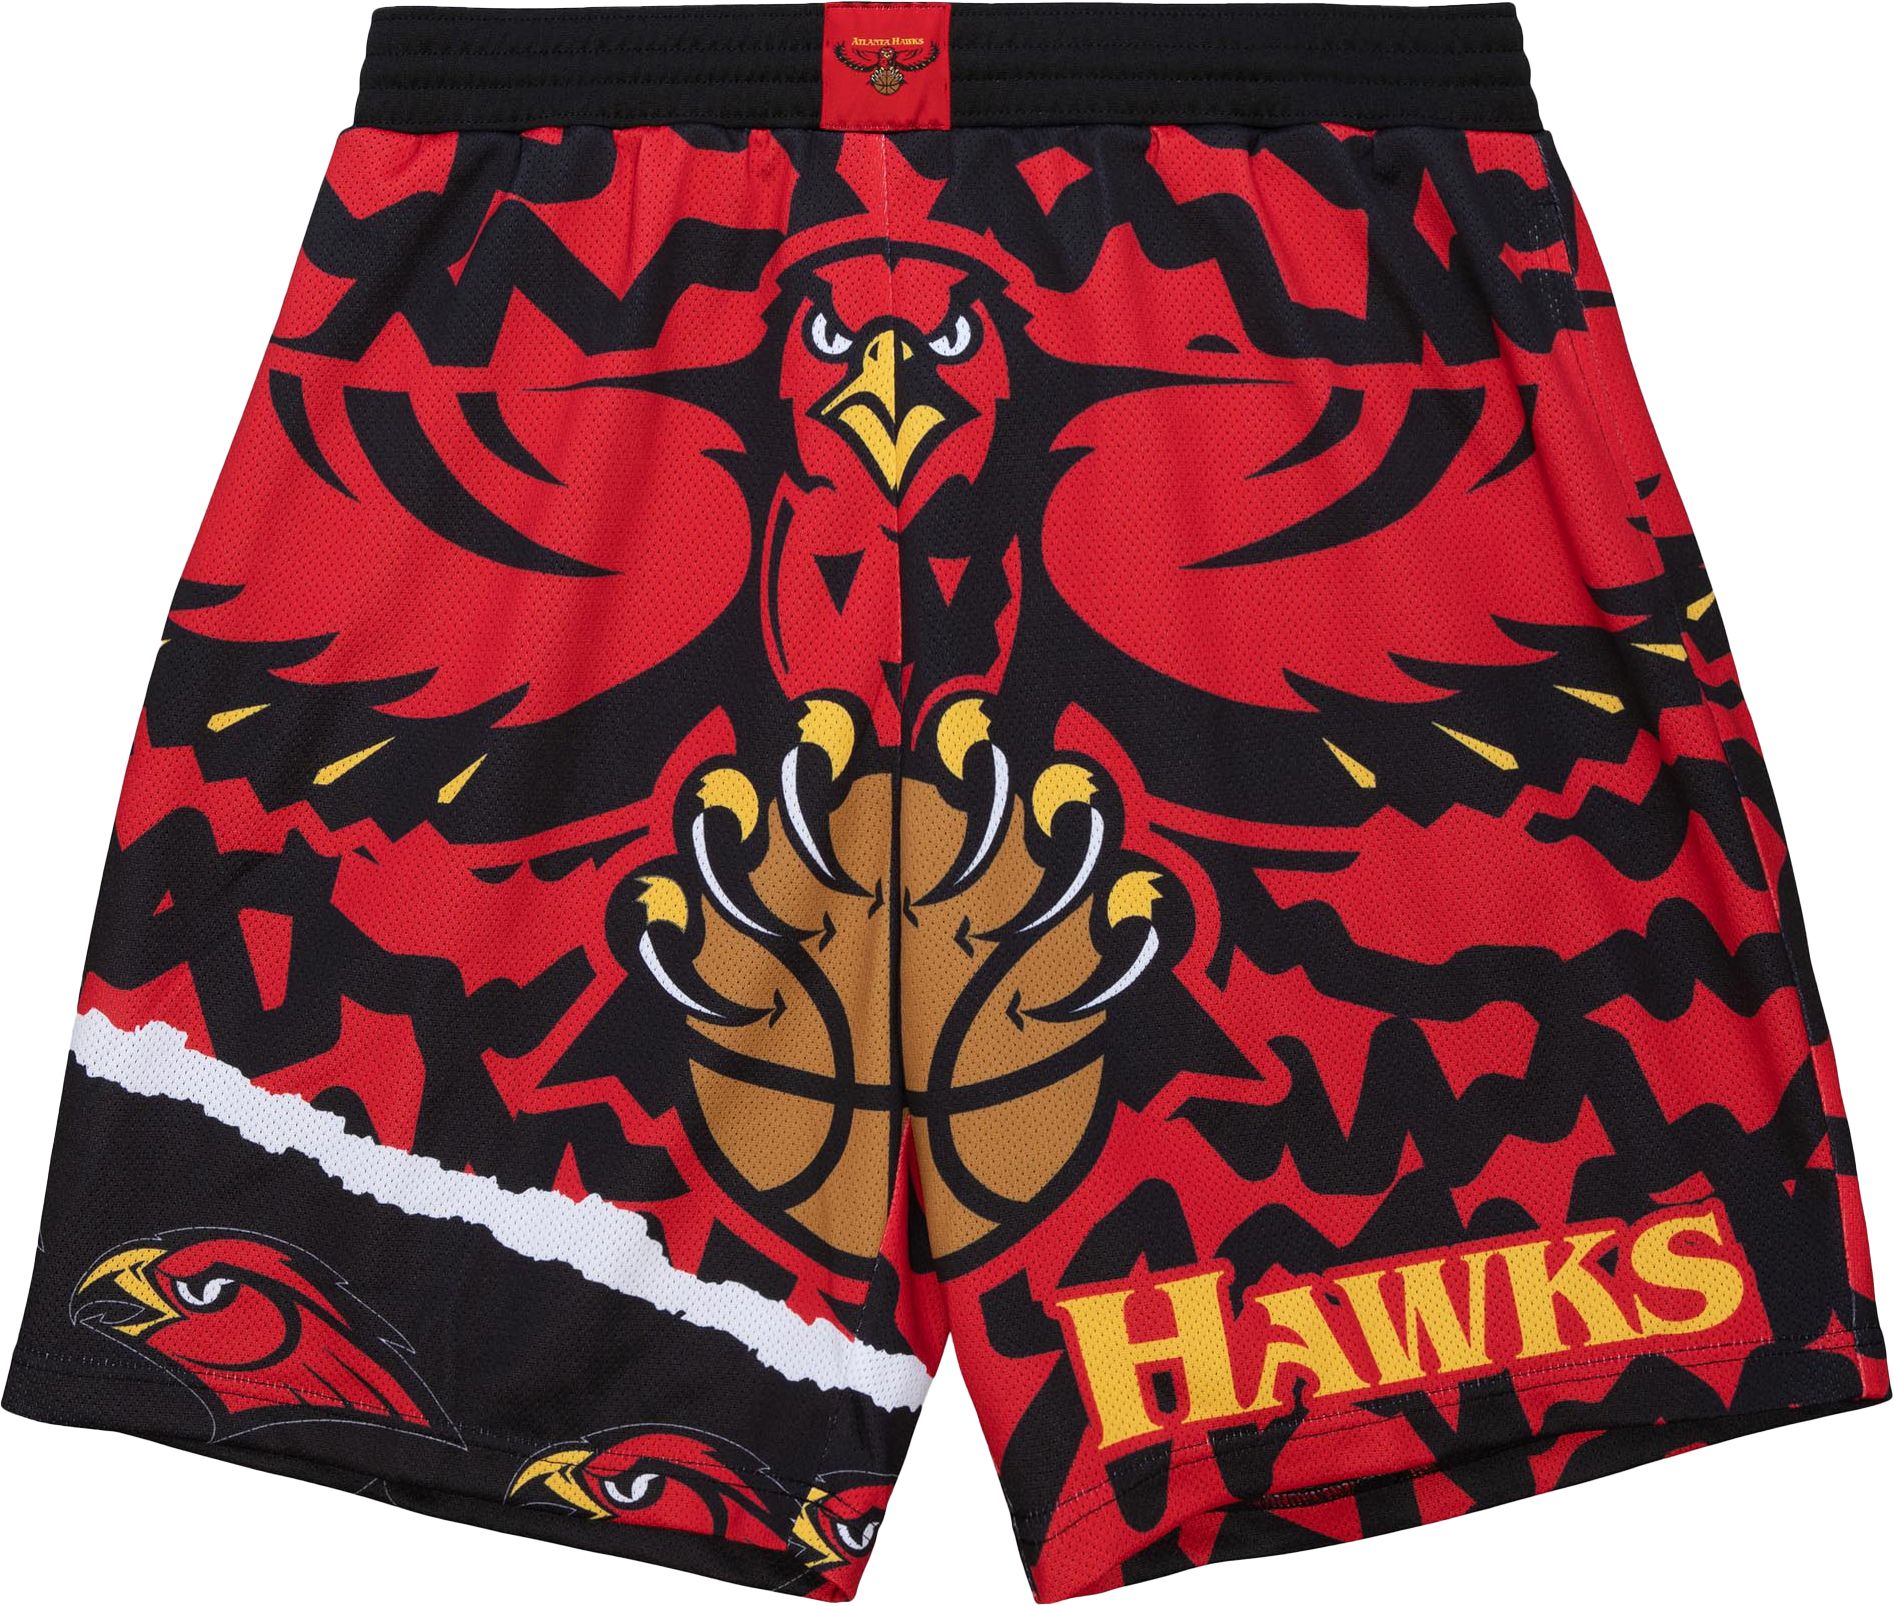 ○□[2 Styles] Nba Jerseys Atlanta Hawks 8# Steve Smith Retro